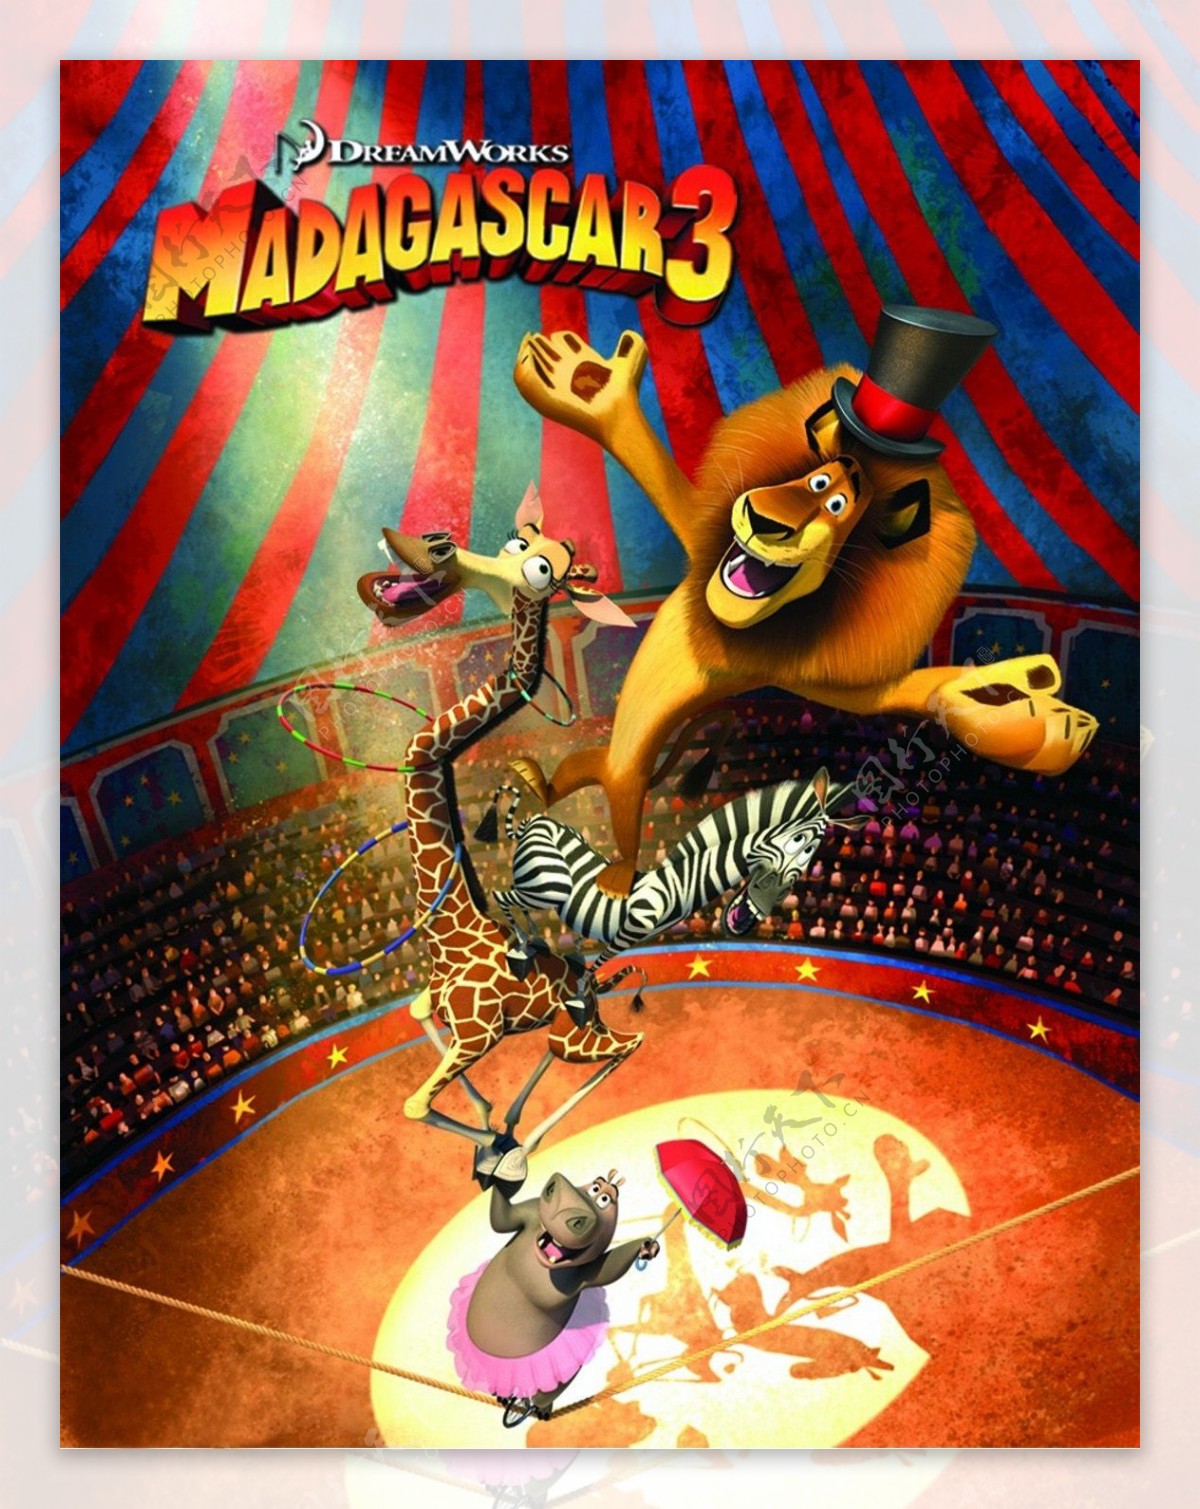 位图热门动画马达加斯加3动物狮子免费素材